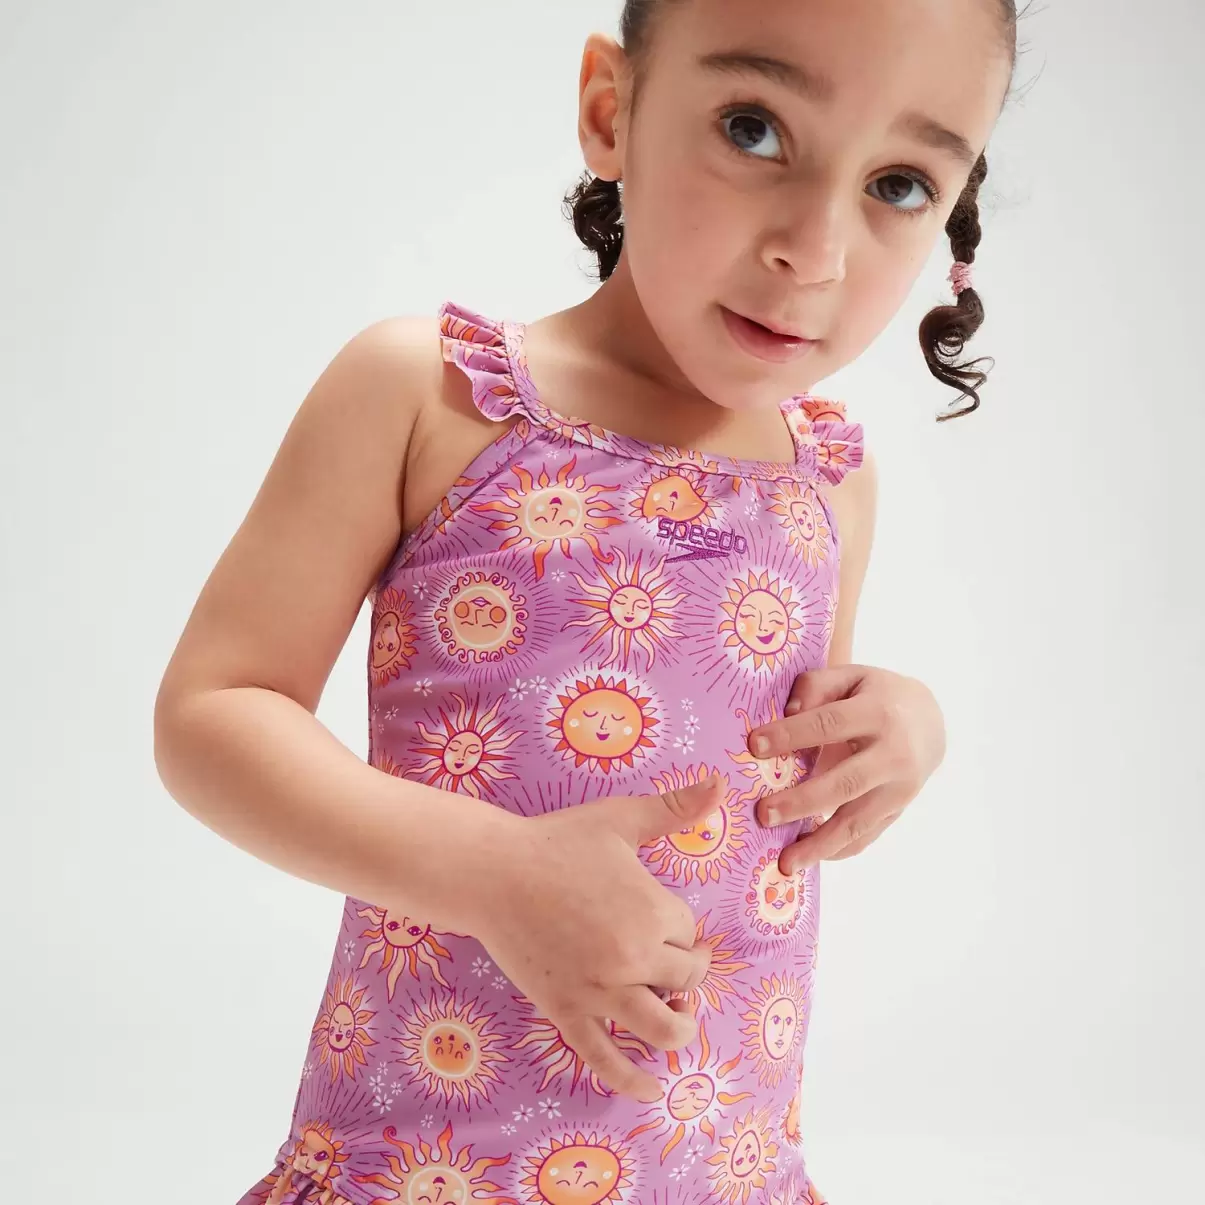 Kinder Mädchen Bademode Speedo Digital-Rüschen-Badeanzug Mit Dünnen Trägern Für Mädchen Im Kleinkindalter Violett/Pink - 4